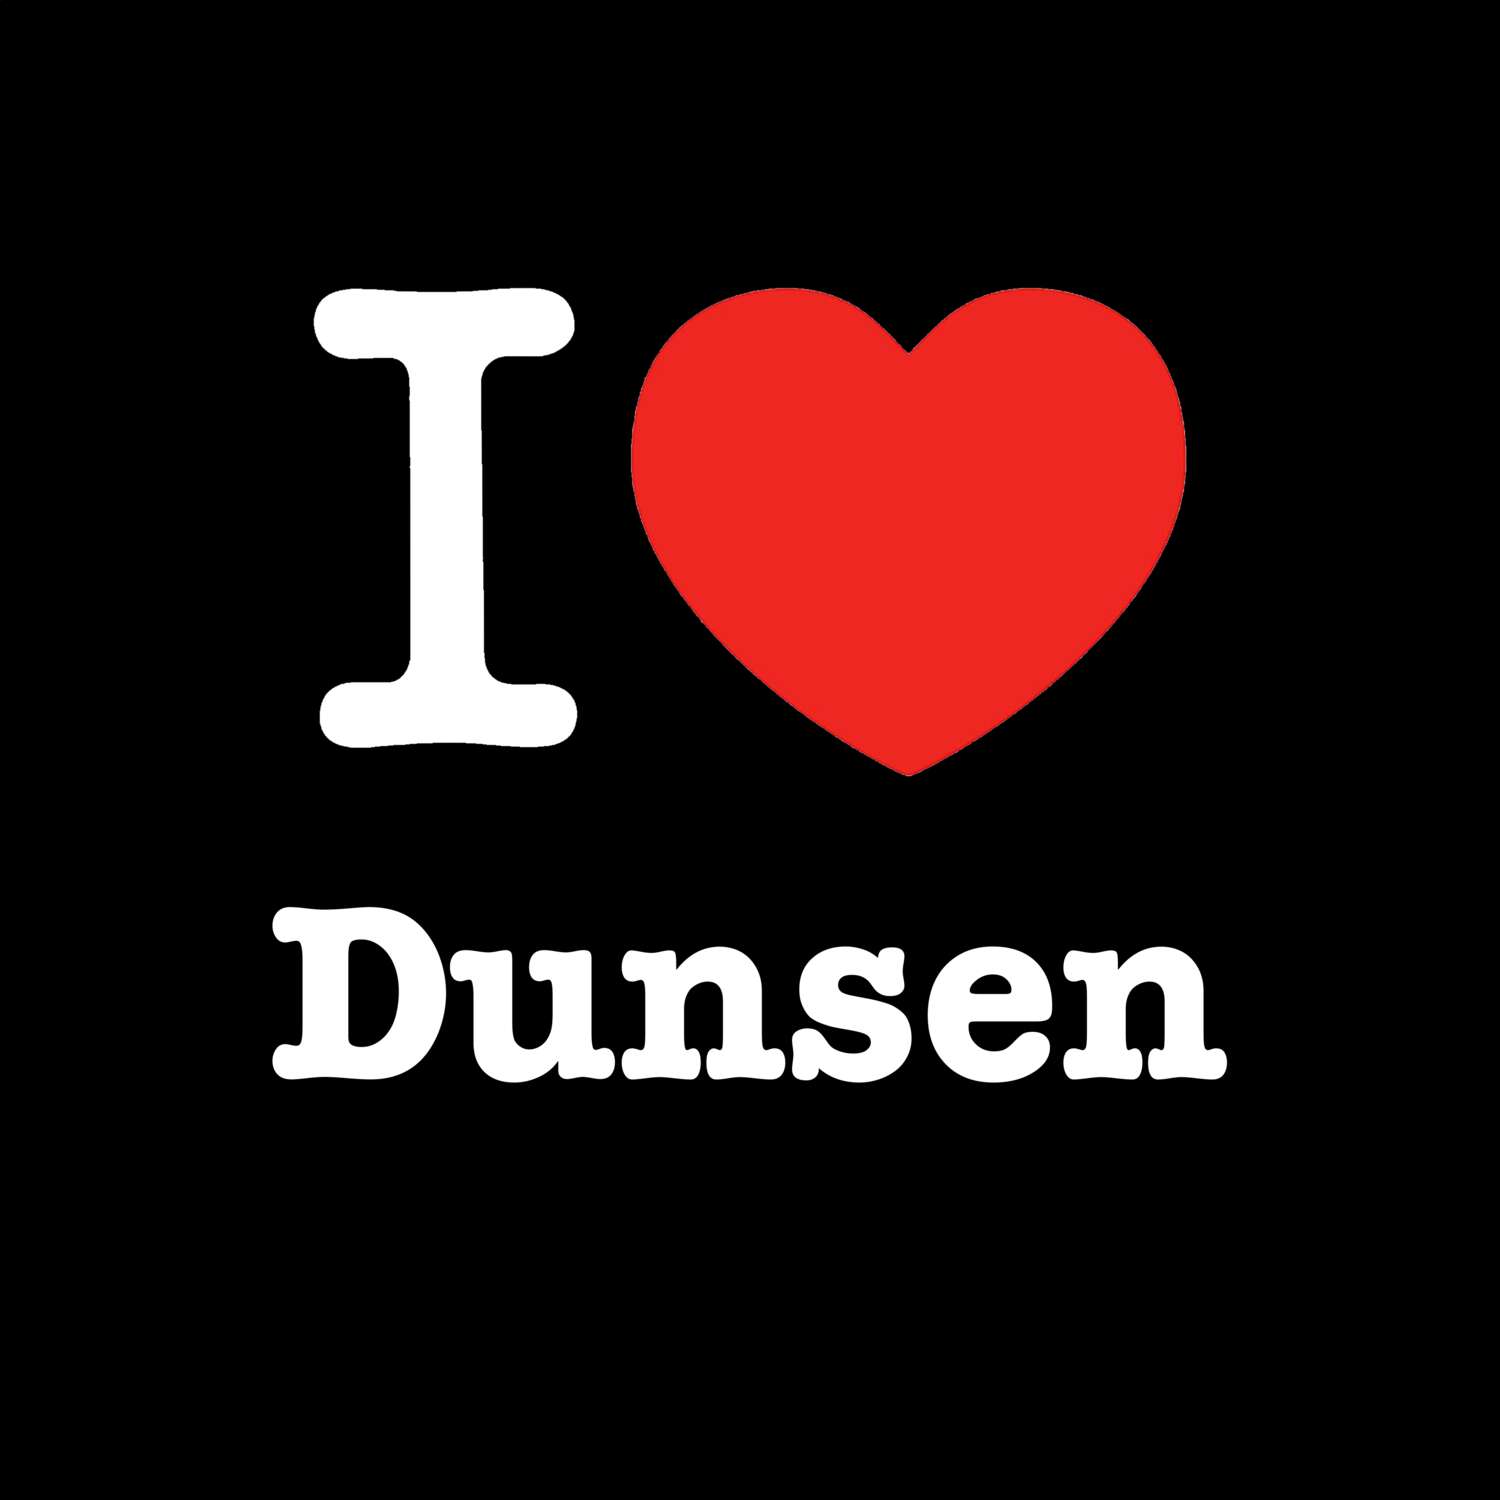 Dunsen T-Shirt »I love«